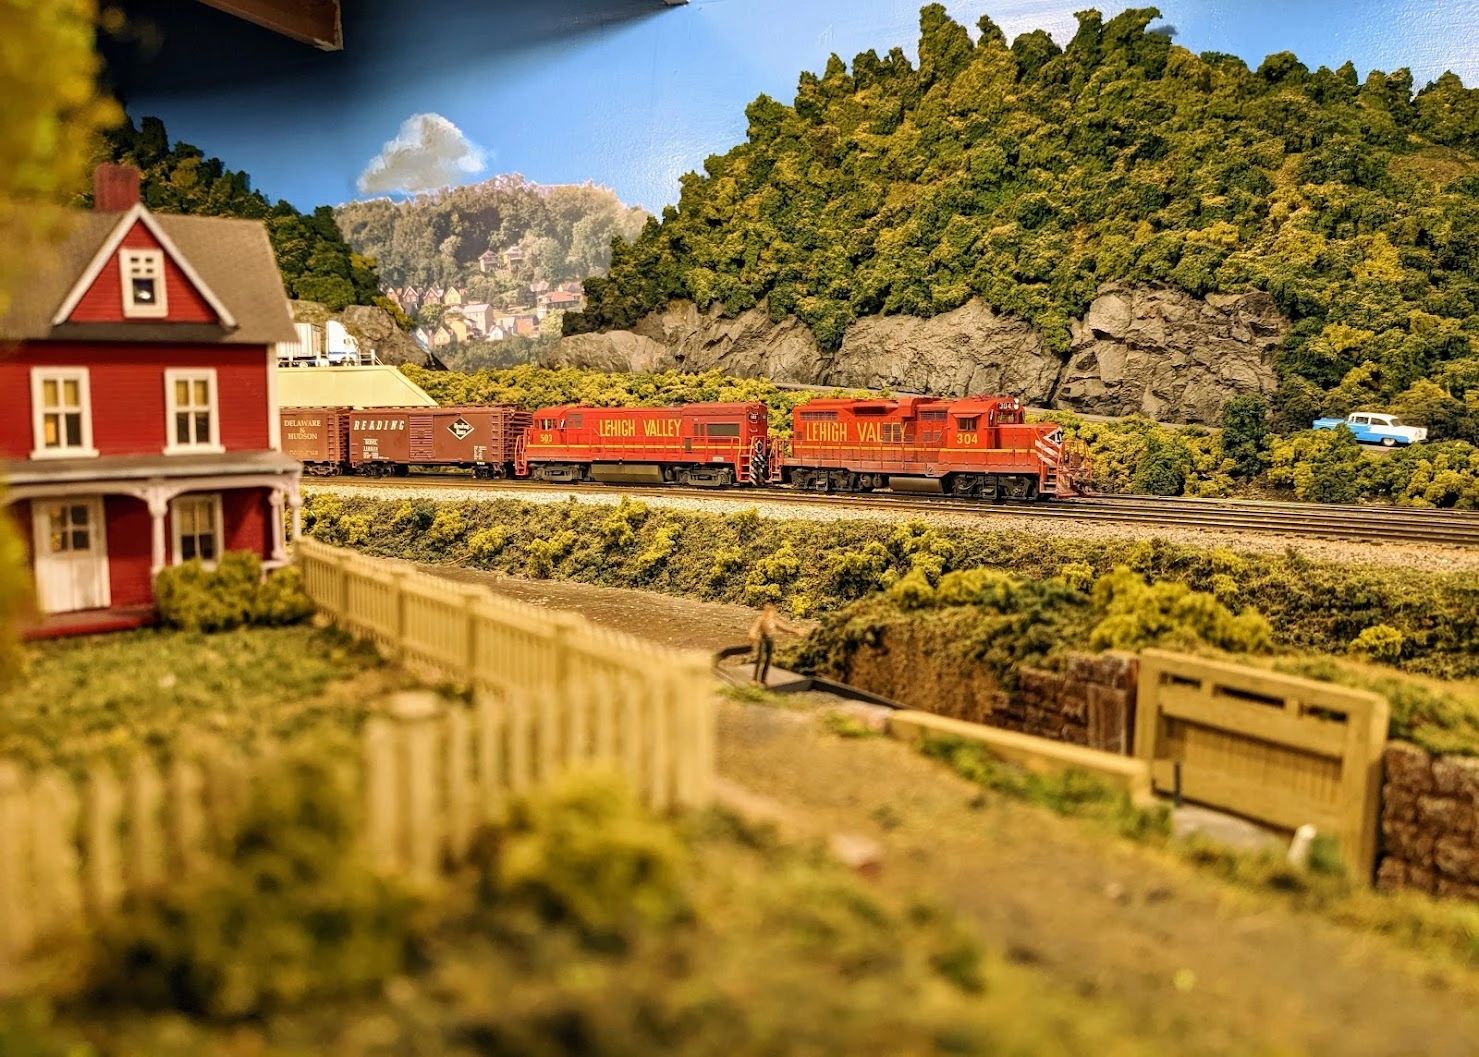 Musée du modélisme ferroviaire Lehigh & Keystone Valley - l'un des plus  grands réseaux ferroviaires des